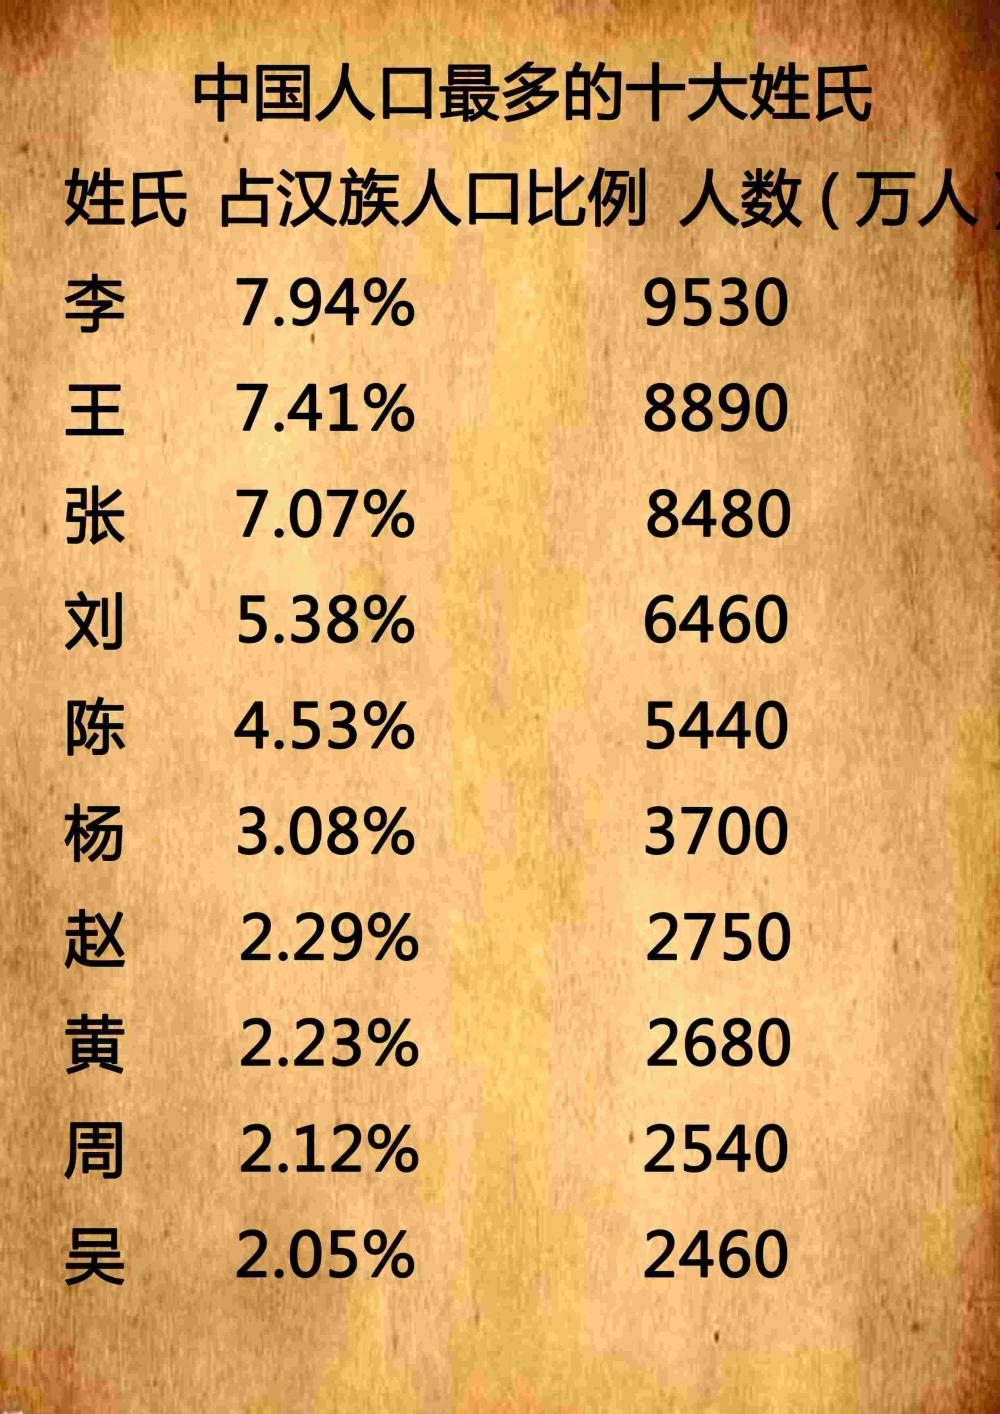 中国姓氏排名榜, 人数最多的姓氏有哪几种呢?